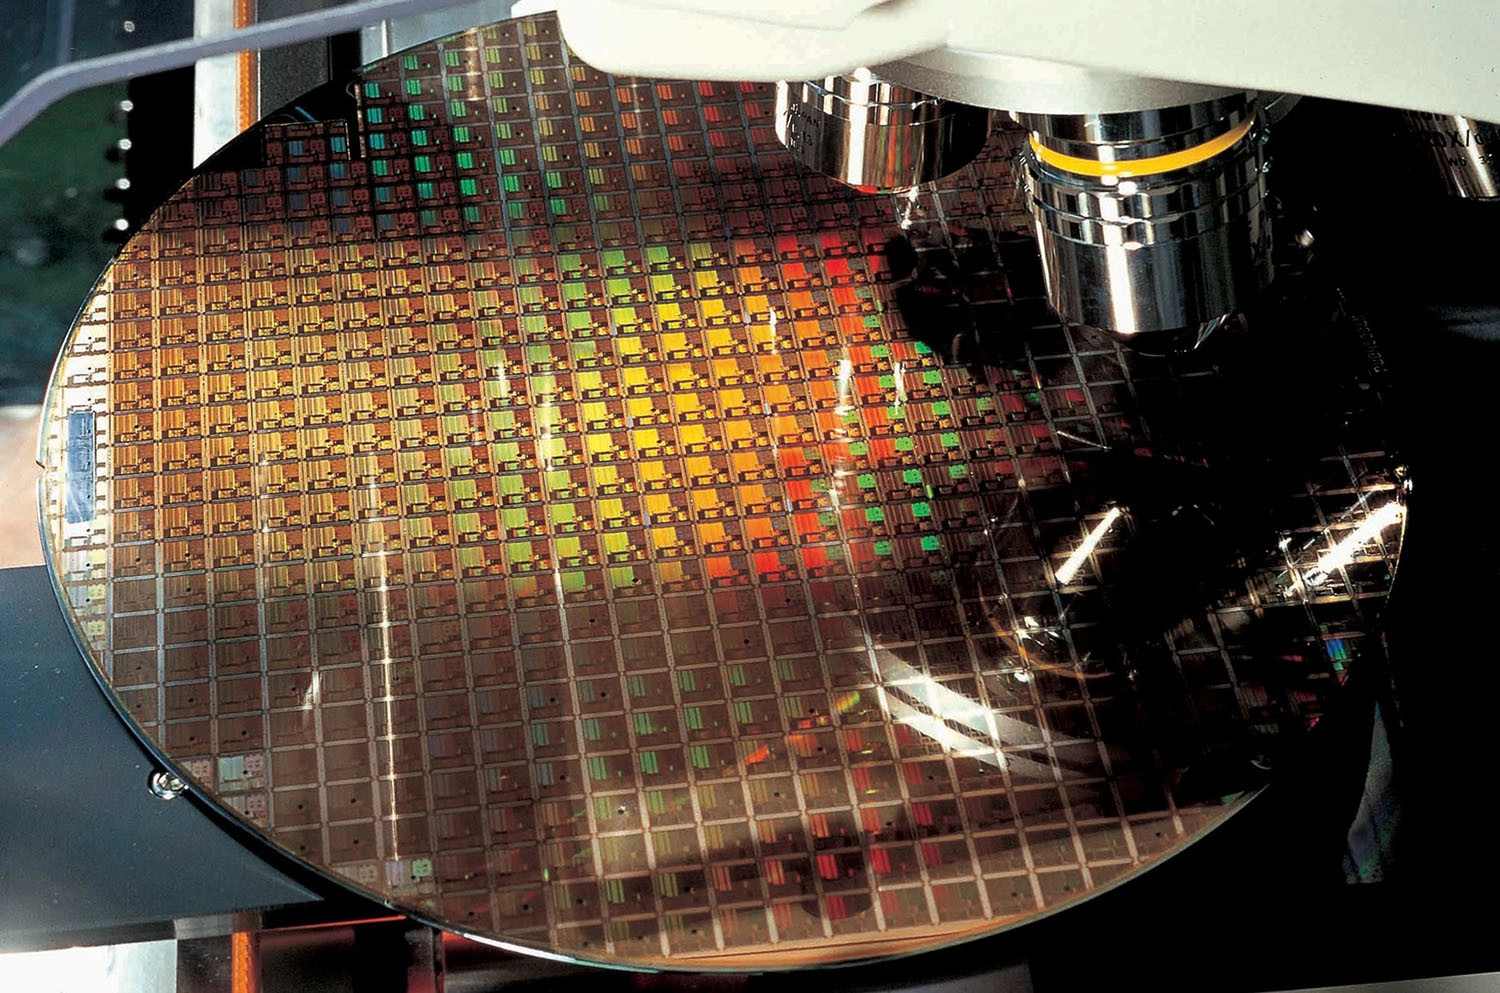 Tiến trình sản xuất vi xử lý hiện đại nhất là 4nm Gen 2 của TSMC